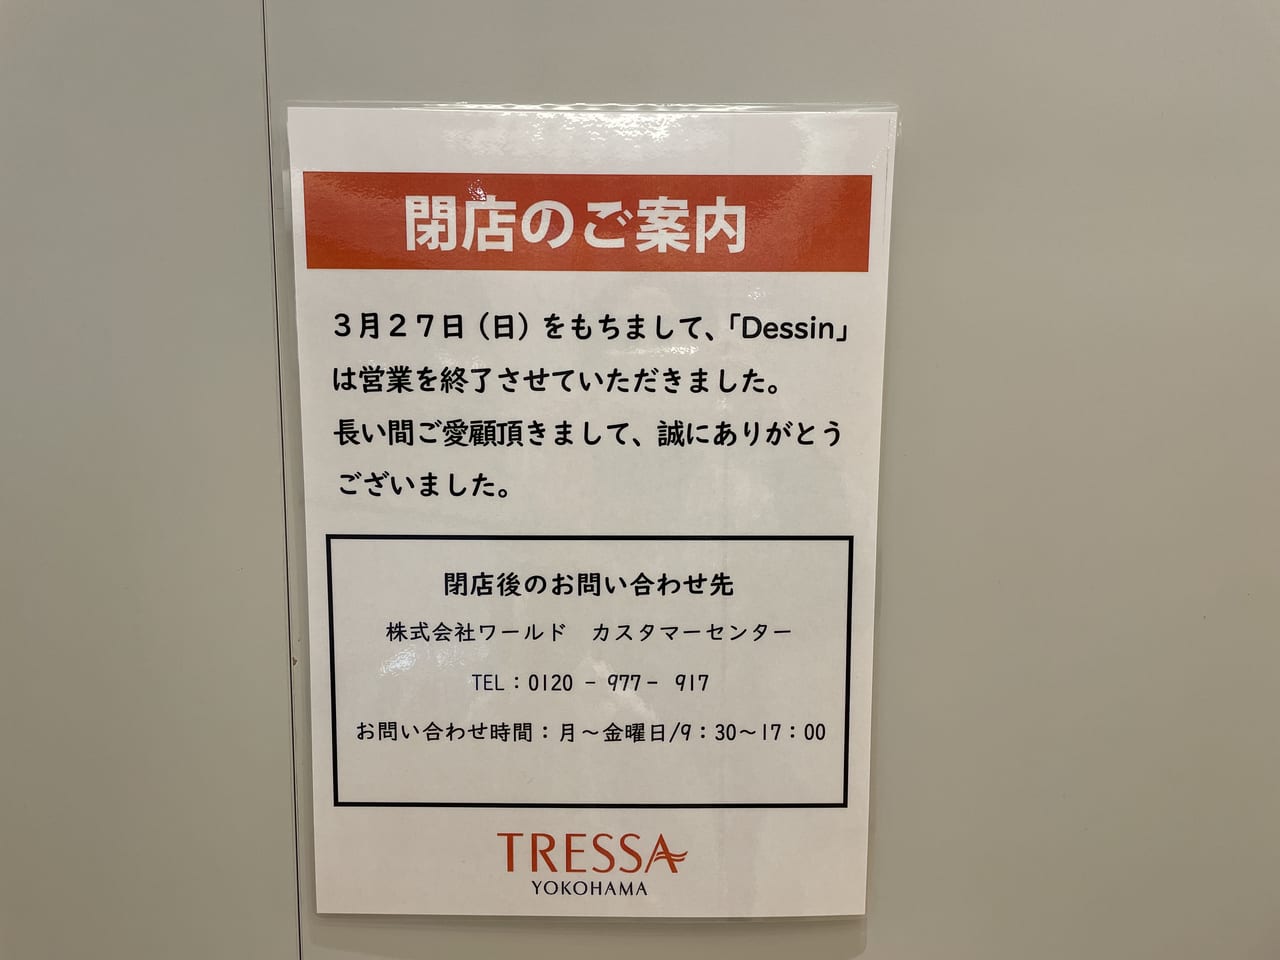 B-COMPANYトレッサ横浜　オープン